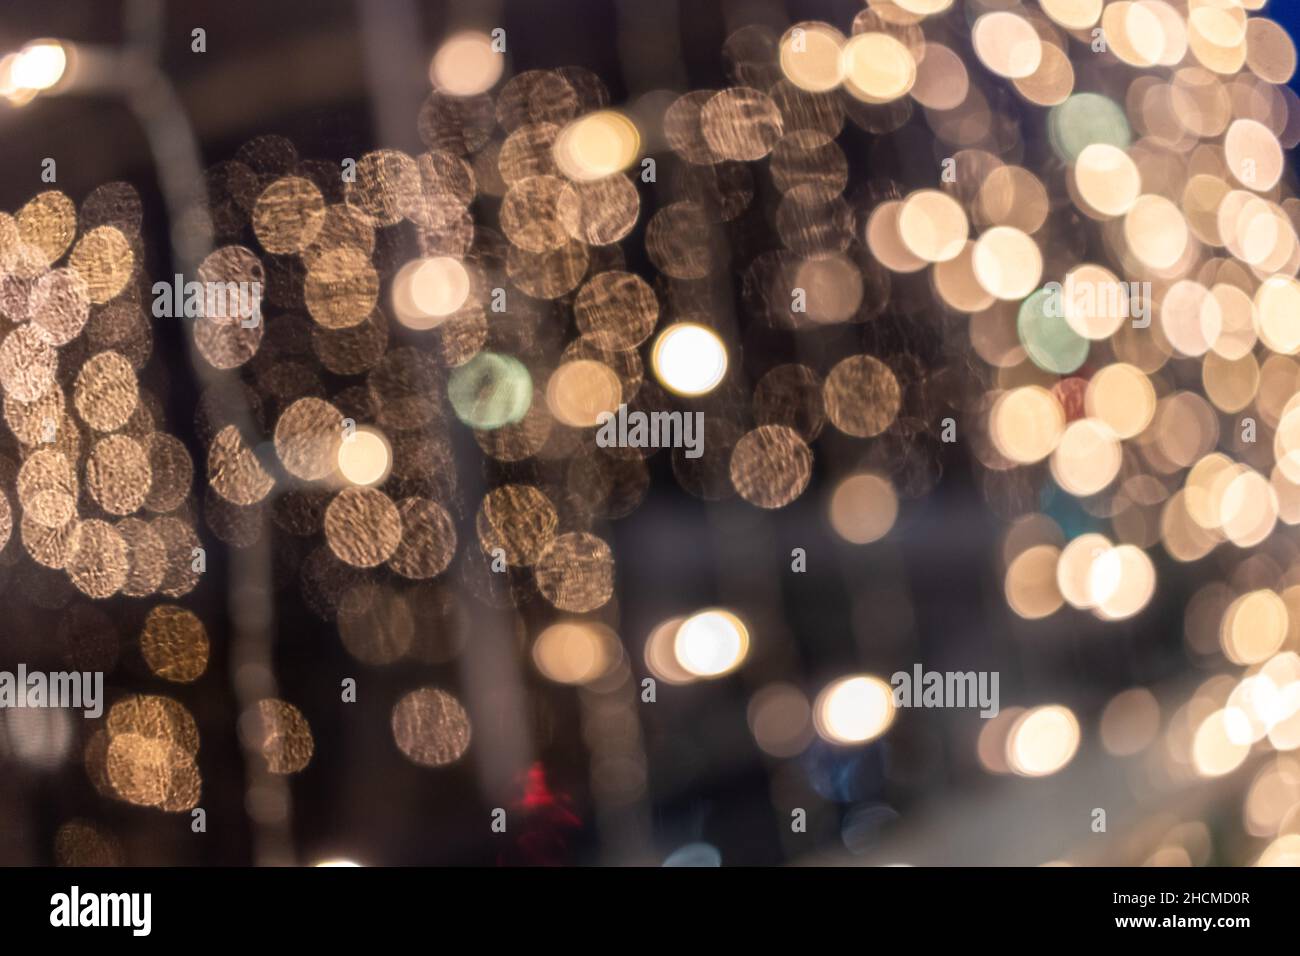 Bunte Bokeh Lichter Mit Einem Dunklen Hintergrund Perfekt Für Coole Tapeten  Stockbild - Bild von unschärfe, form: 186661113